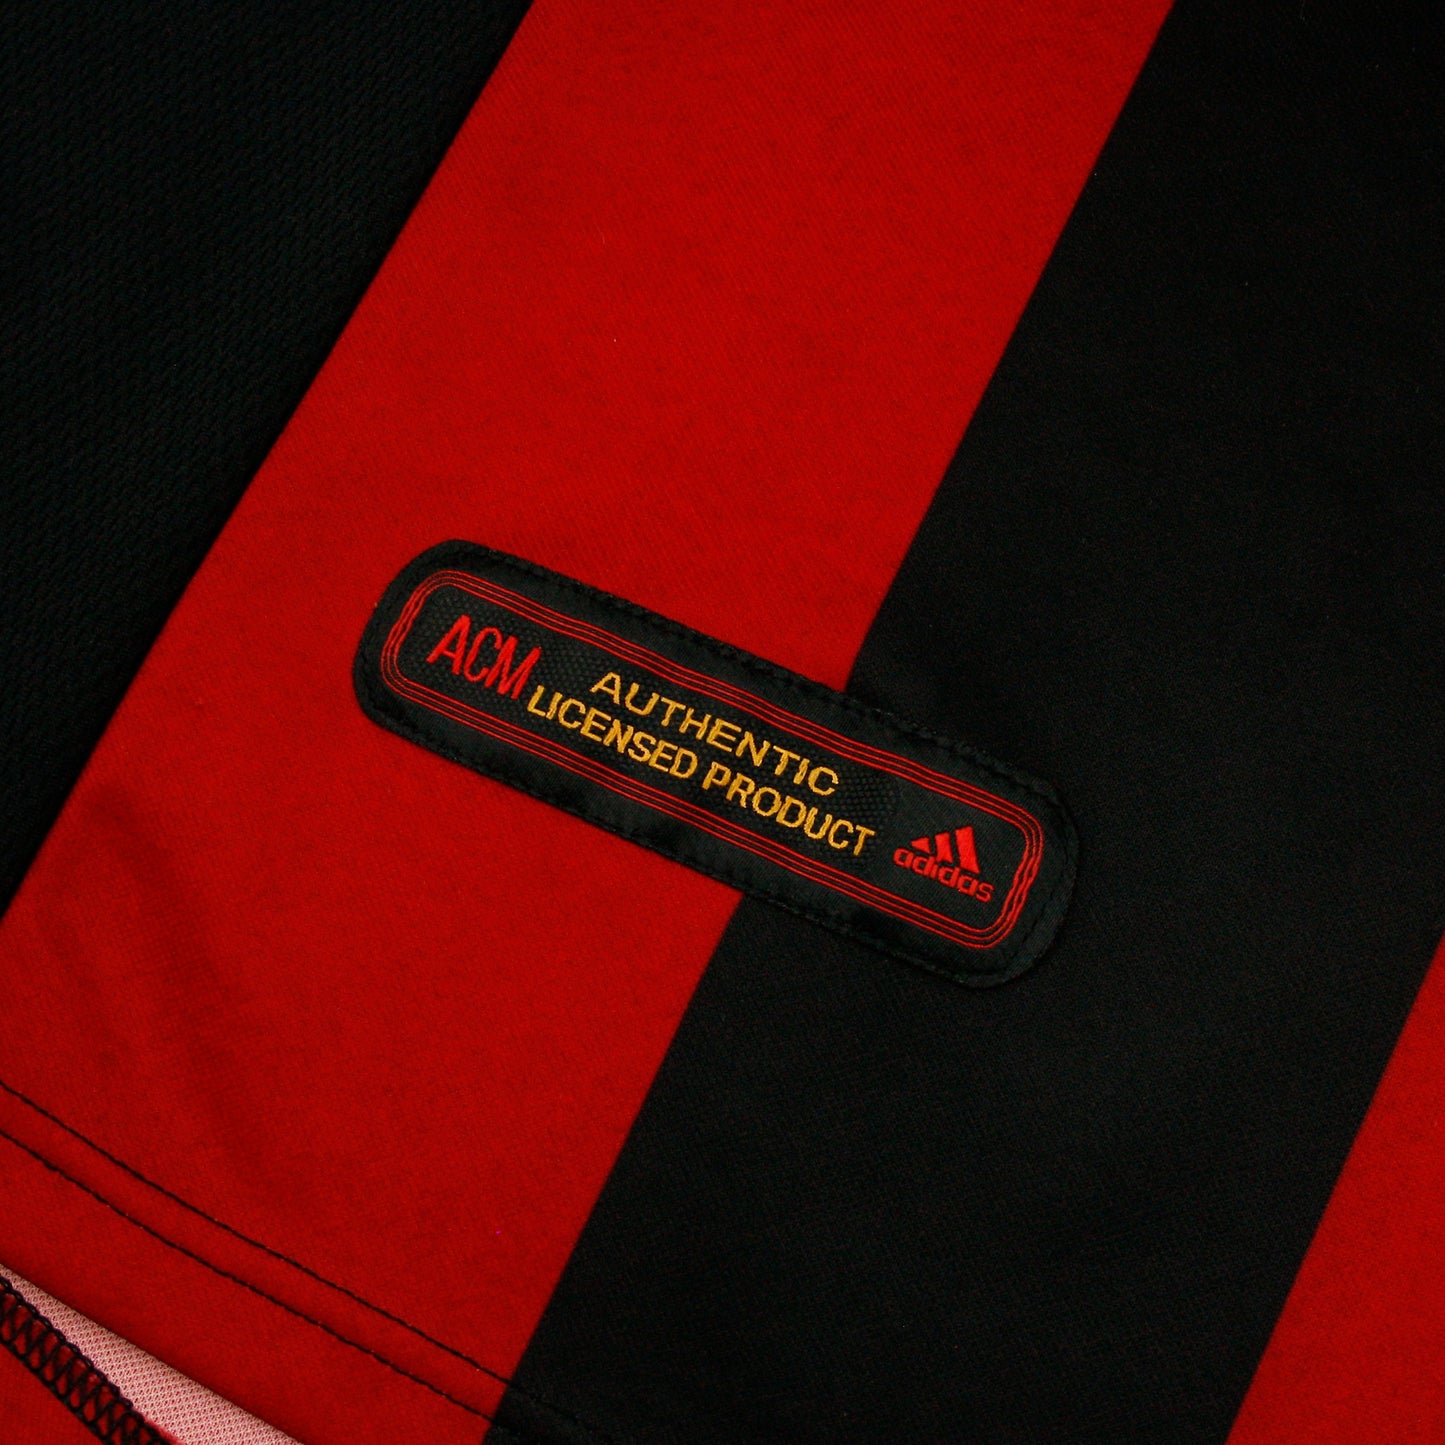 AC Milan 00/02 • Camiseta Local • M • Maldini #3